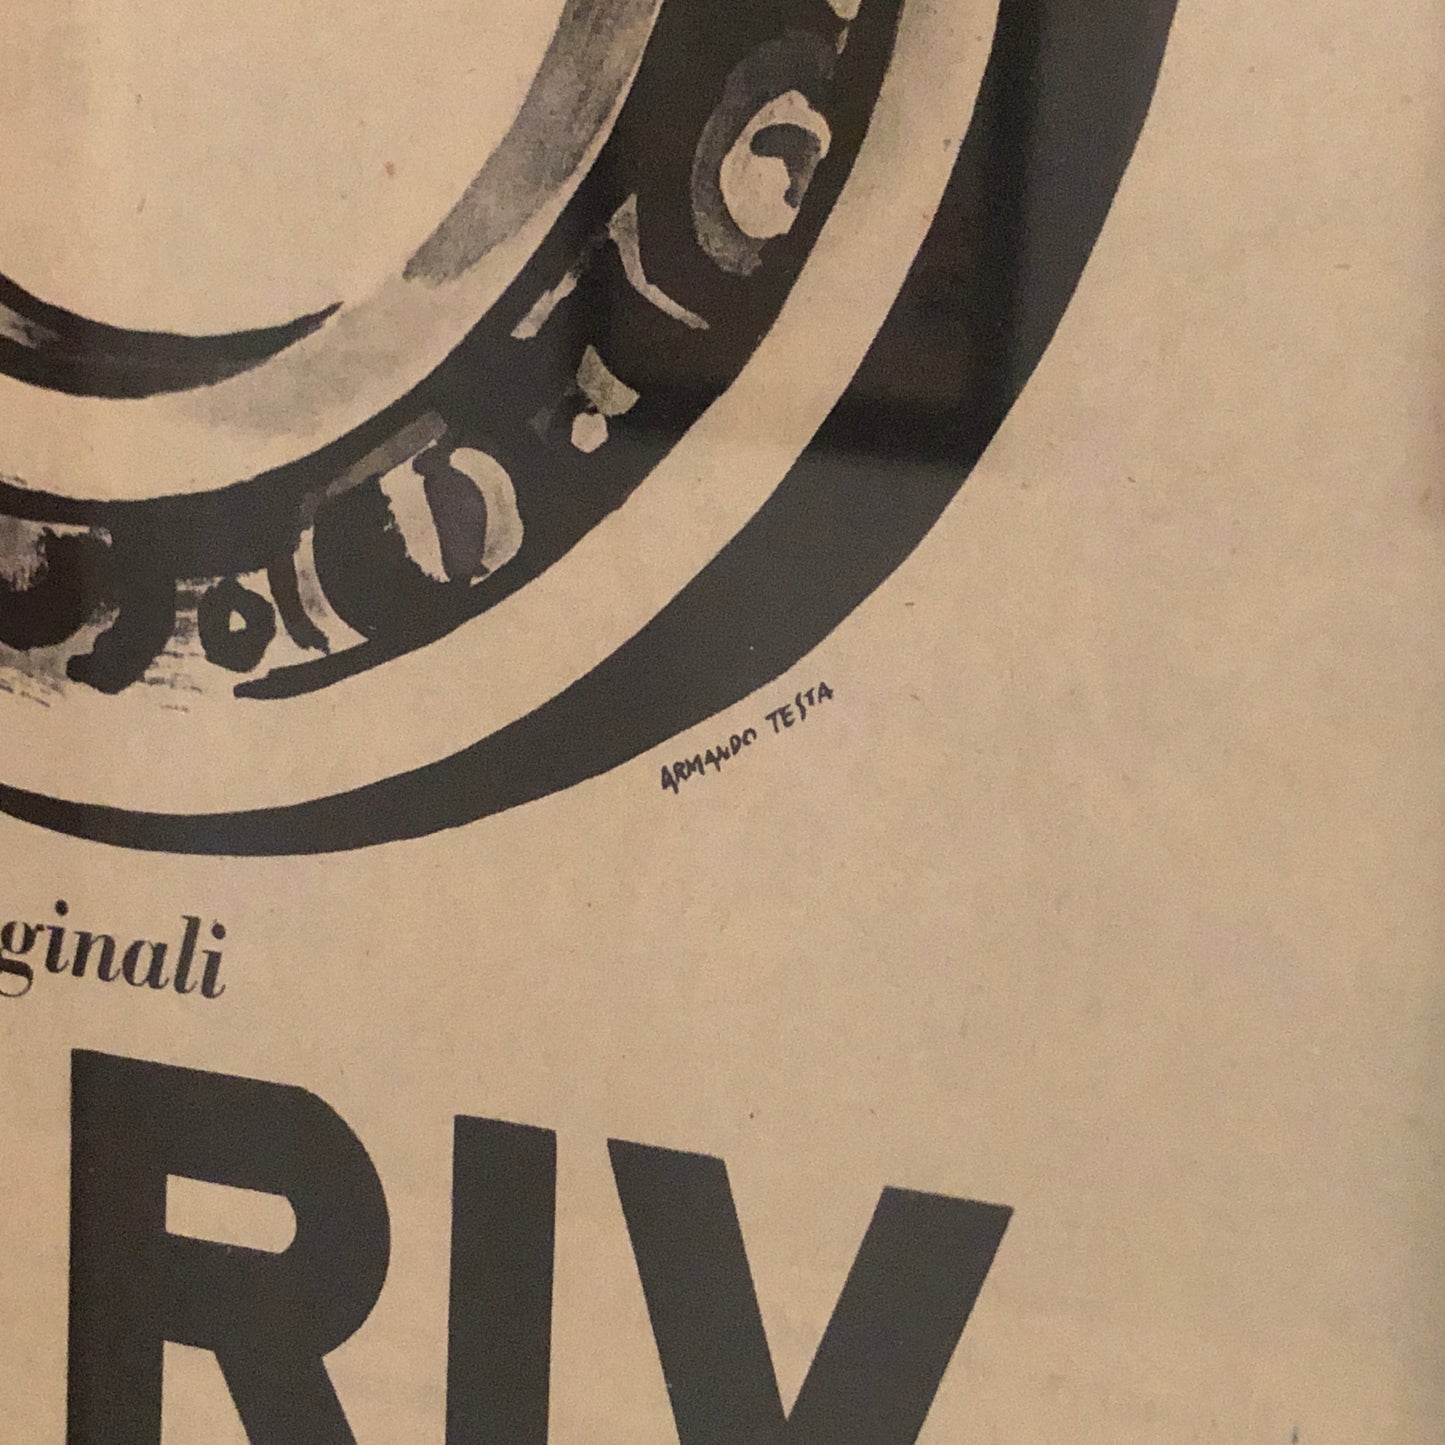 RIV, Pubblicità Anno 1960 Ricambi Originali RIV Disegnata da Armando Testa